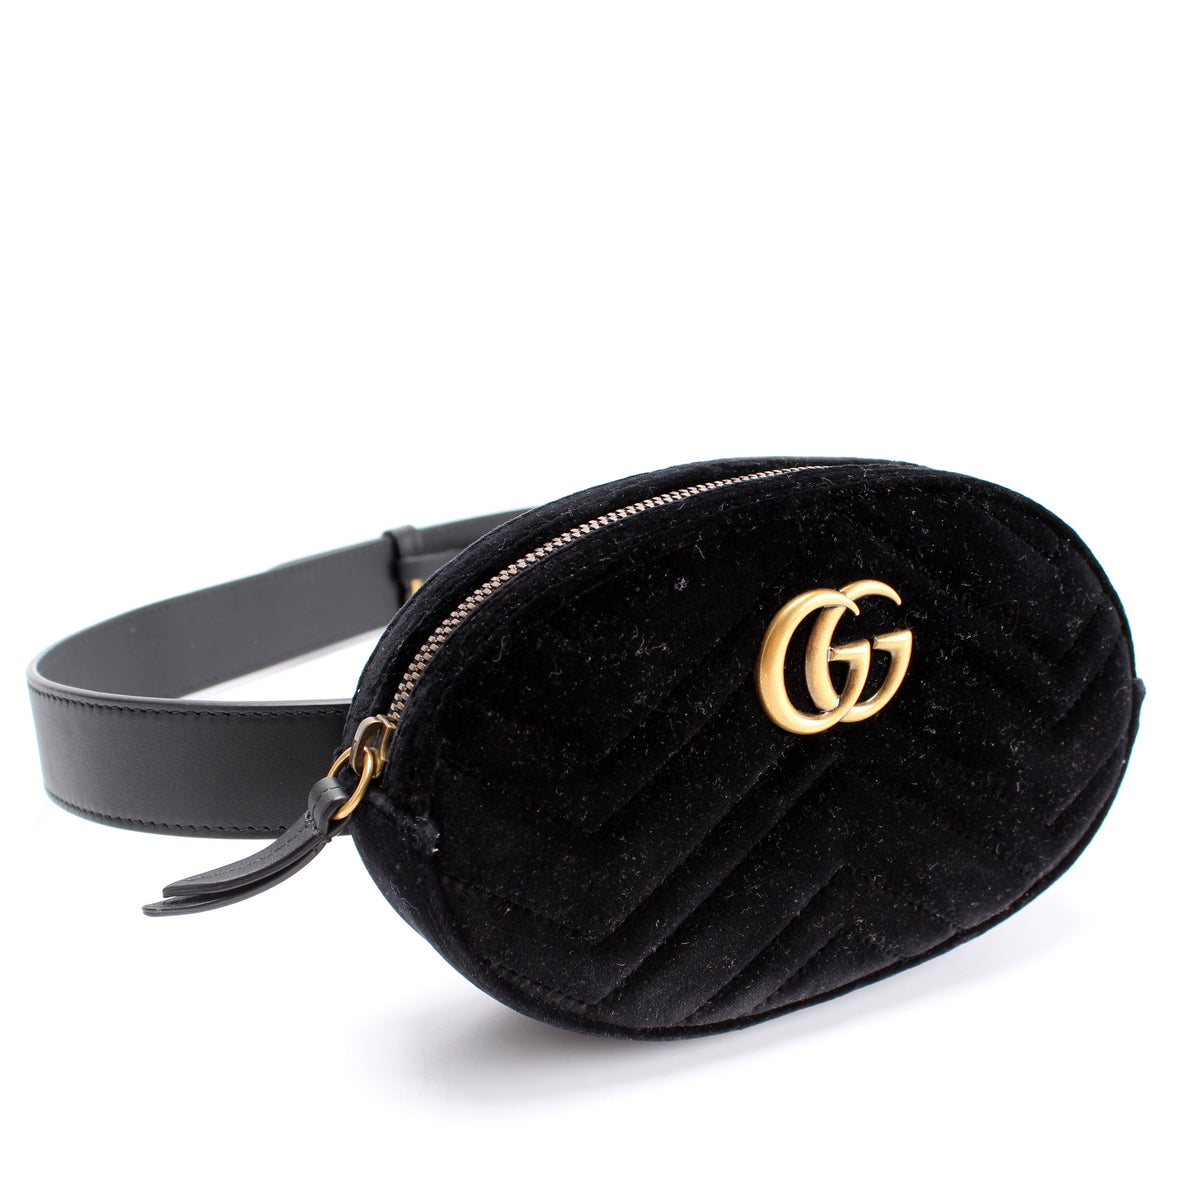 LOUIS VUITTON vs. GUCCI - LV Bumbag and Gucci Belt Bag comparison